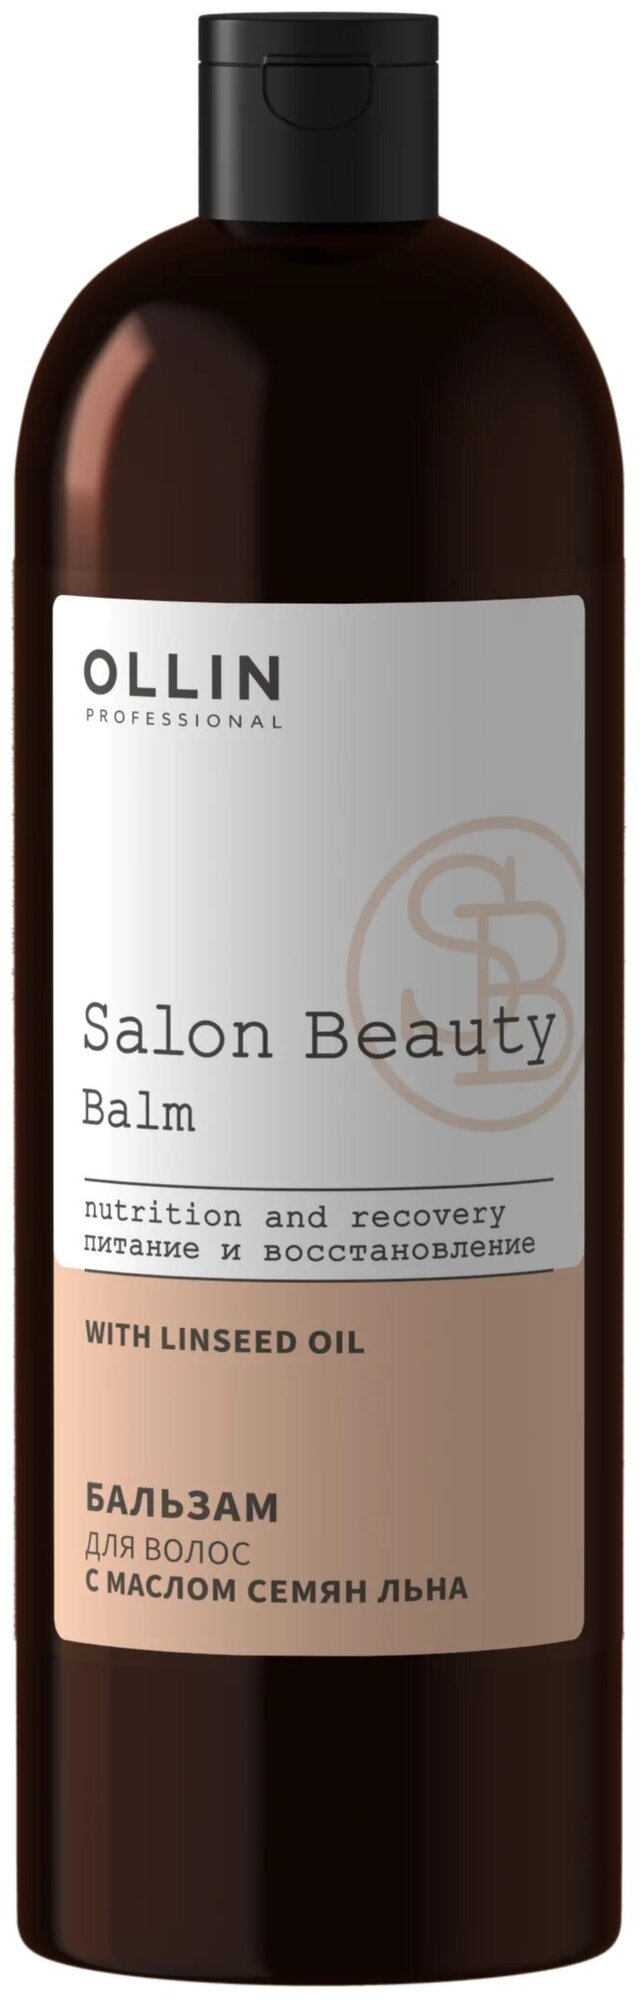 Бальзам для волос с маслом семян льна Ollin Professional Salon Beauty (1000 мл)